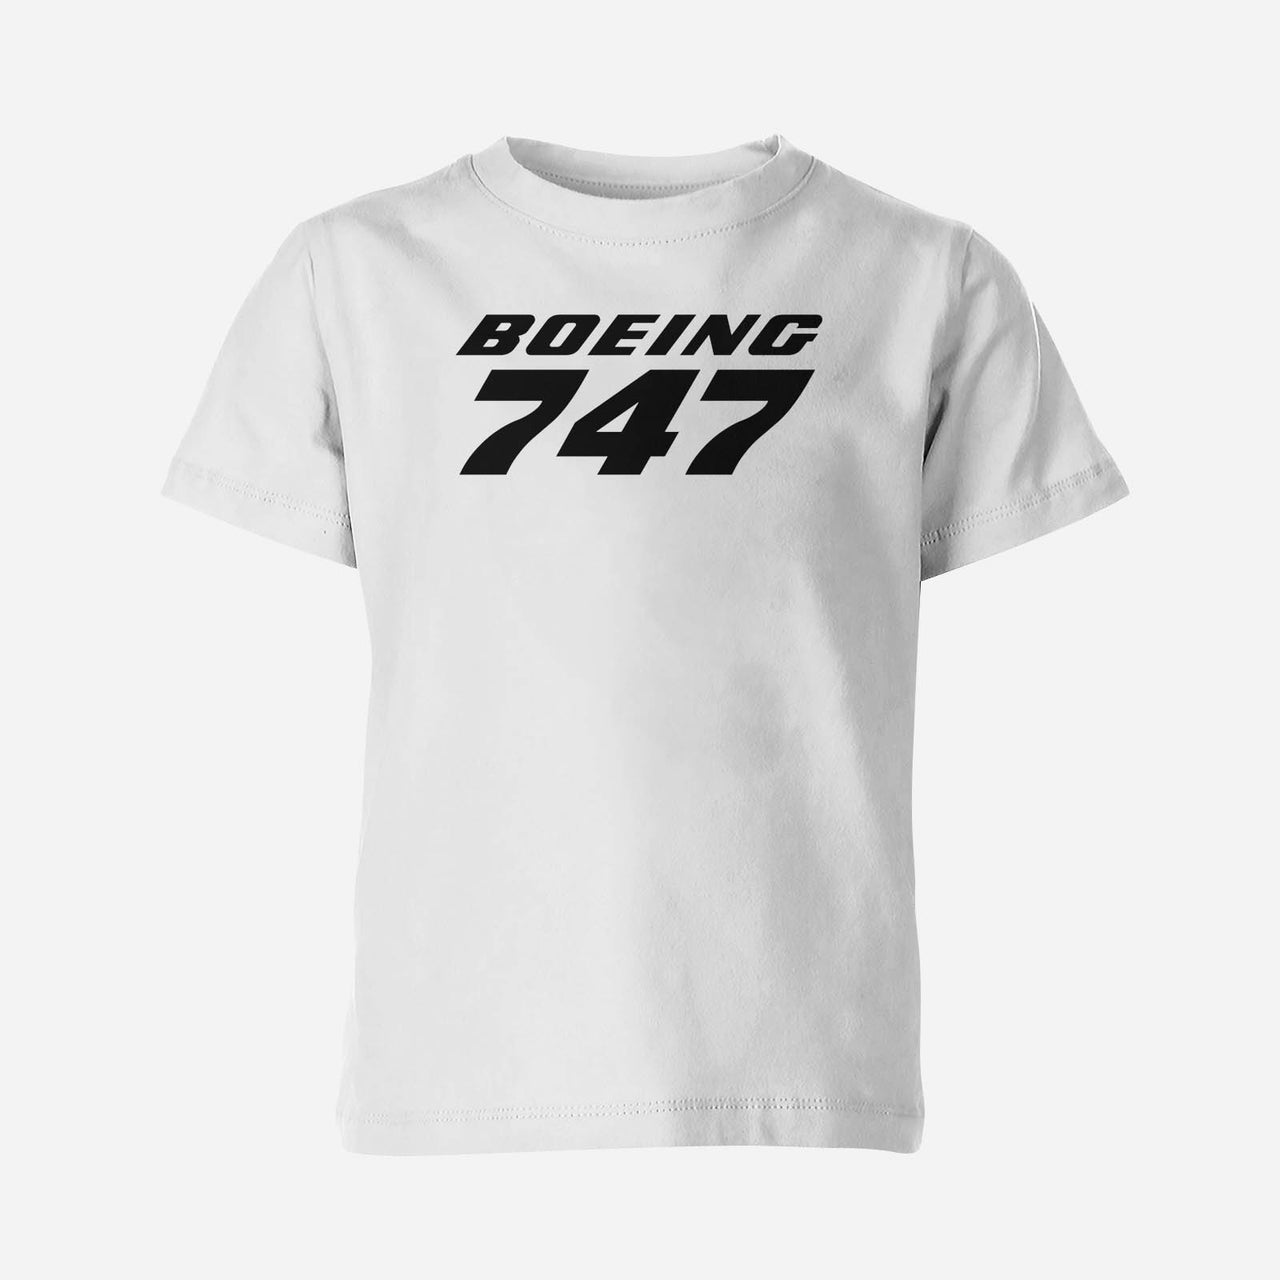 Boeing 747 & Text Designed Children T-Shirts